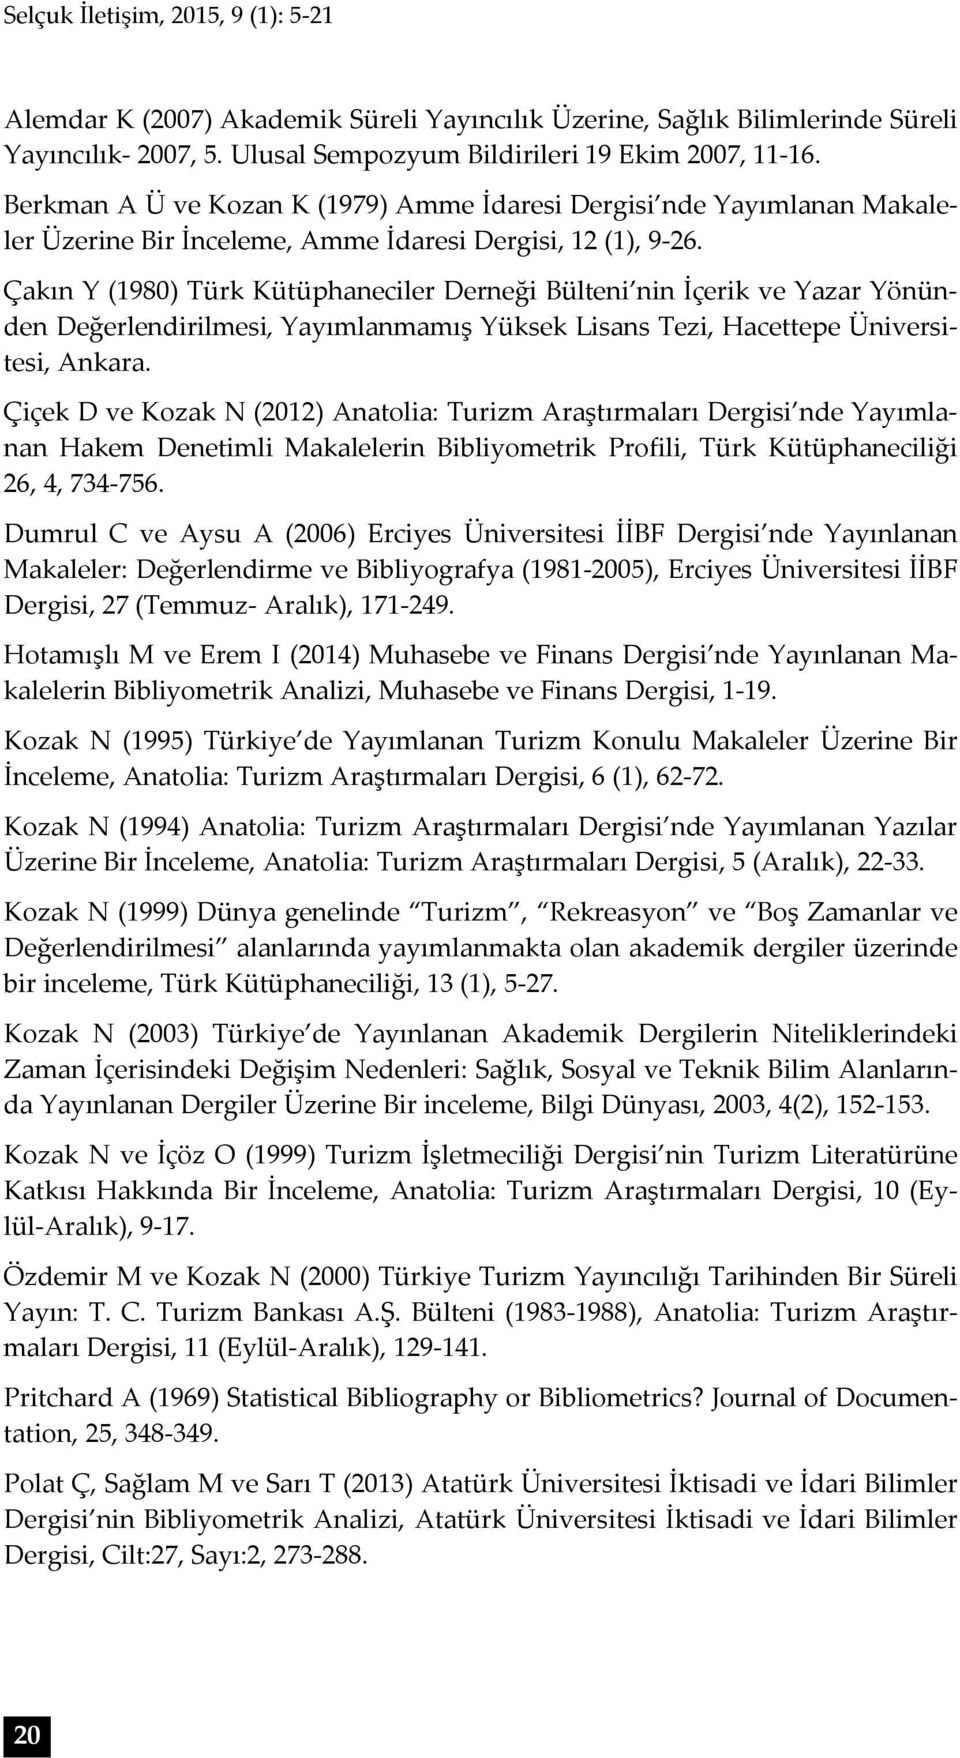 Çakın Y (1980) Türk Kütüphaneciler Derneği Bülteni nin İçerik ve Yazar Yönünden Değerlendirilmesi, Yayımlanmamış Yüksek Lisans Tezi, Hacettepe, Ankara.